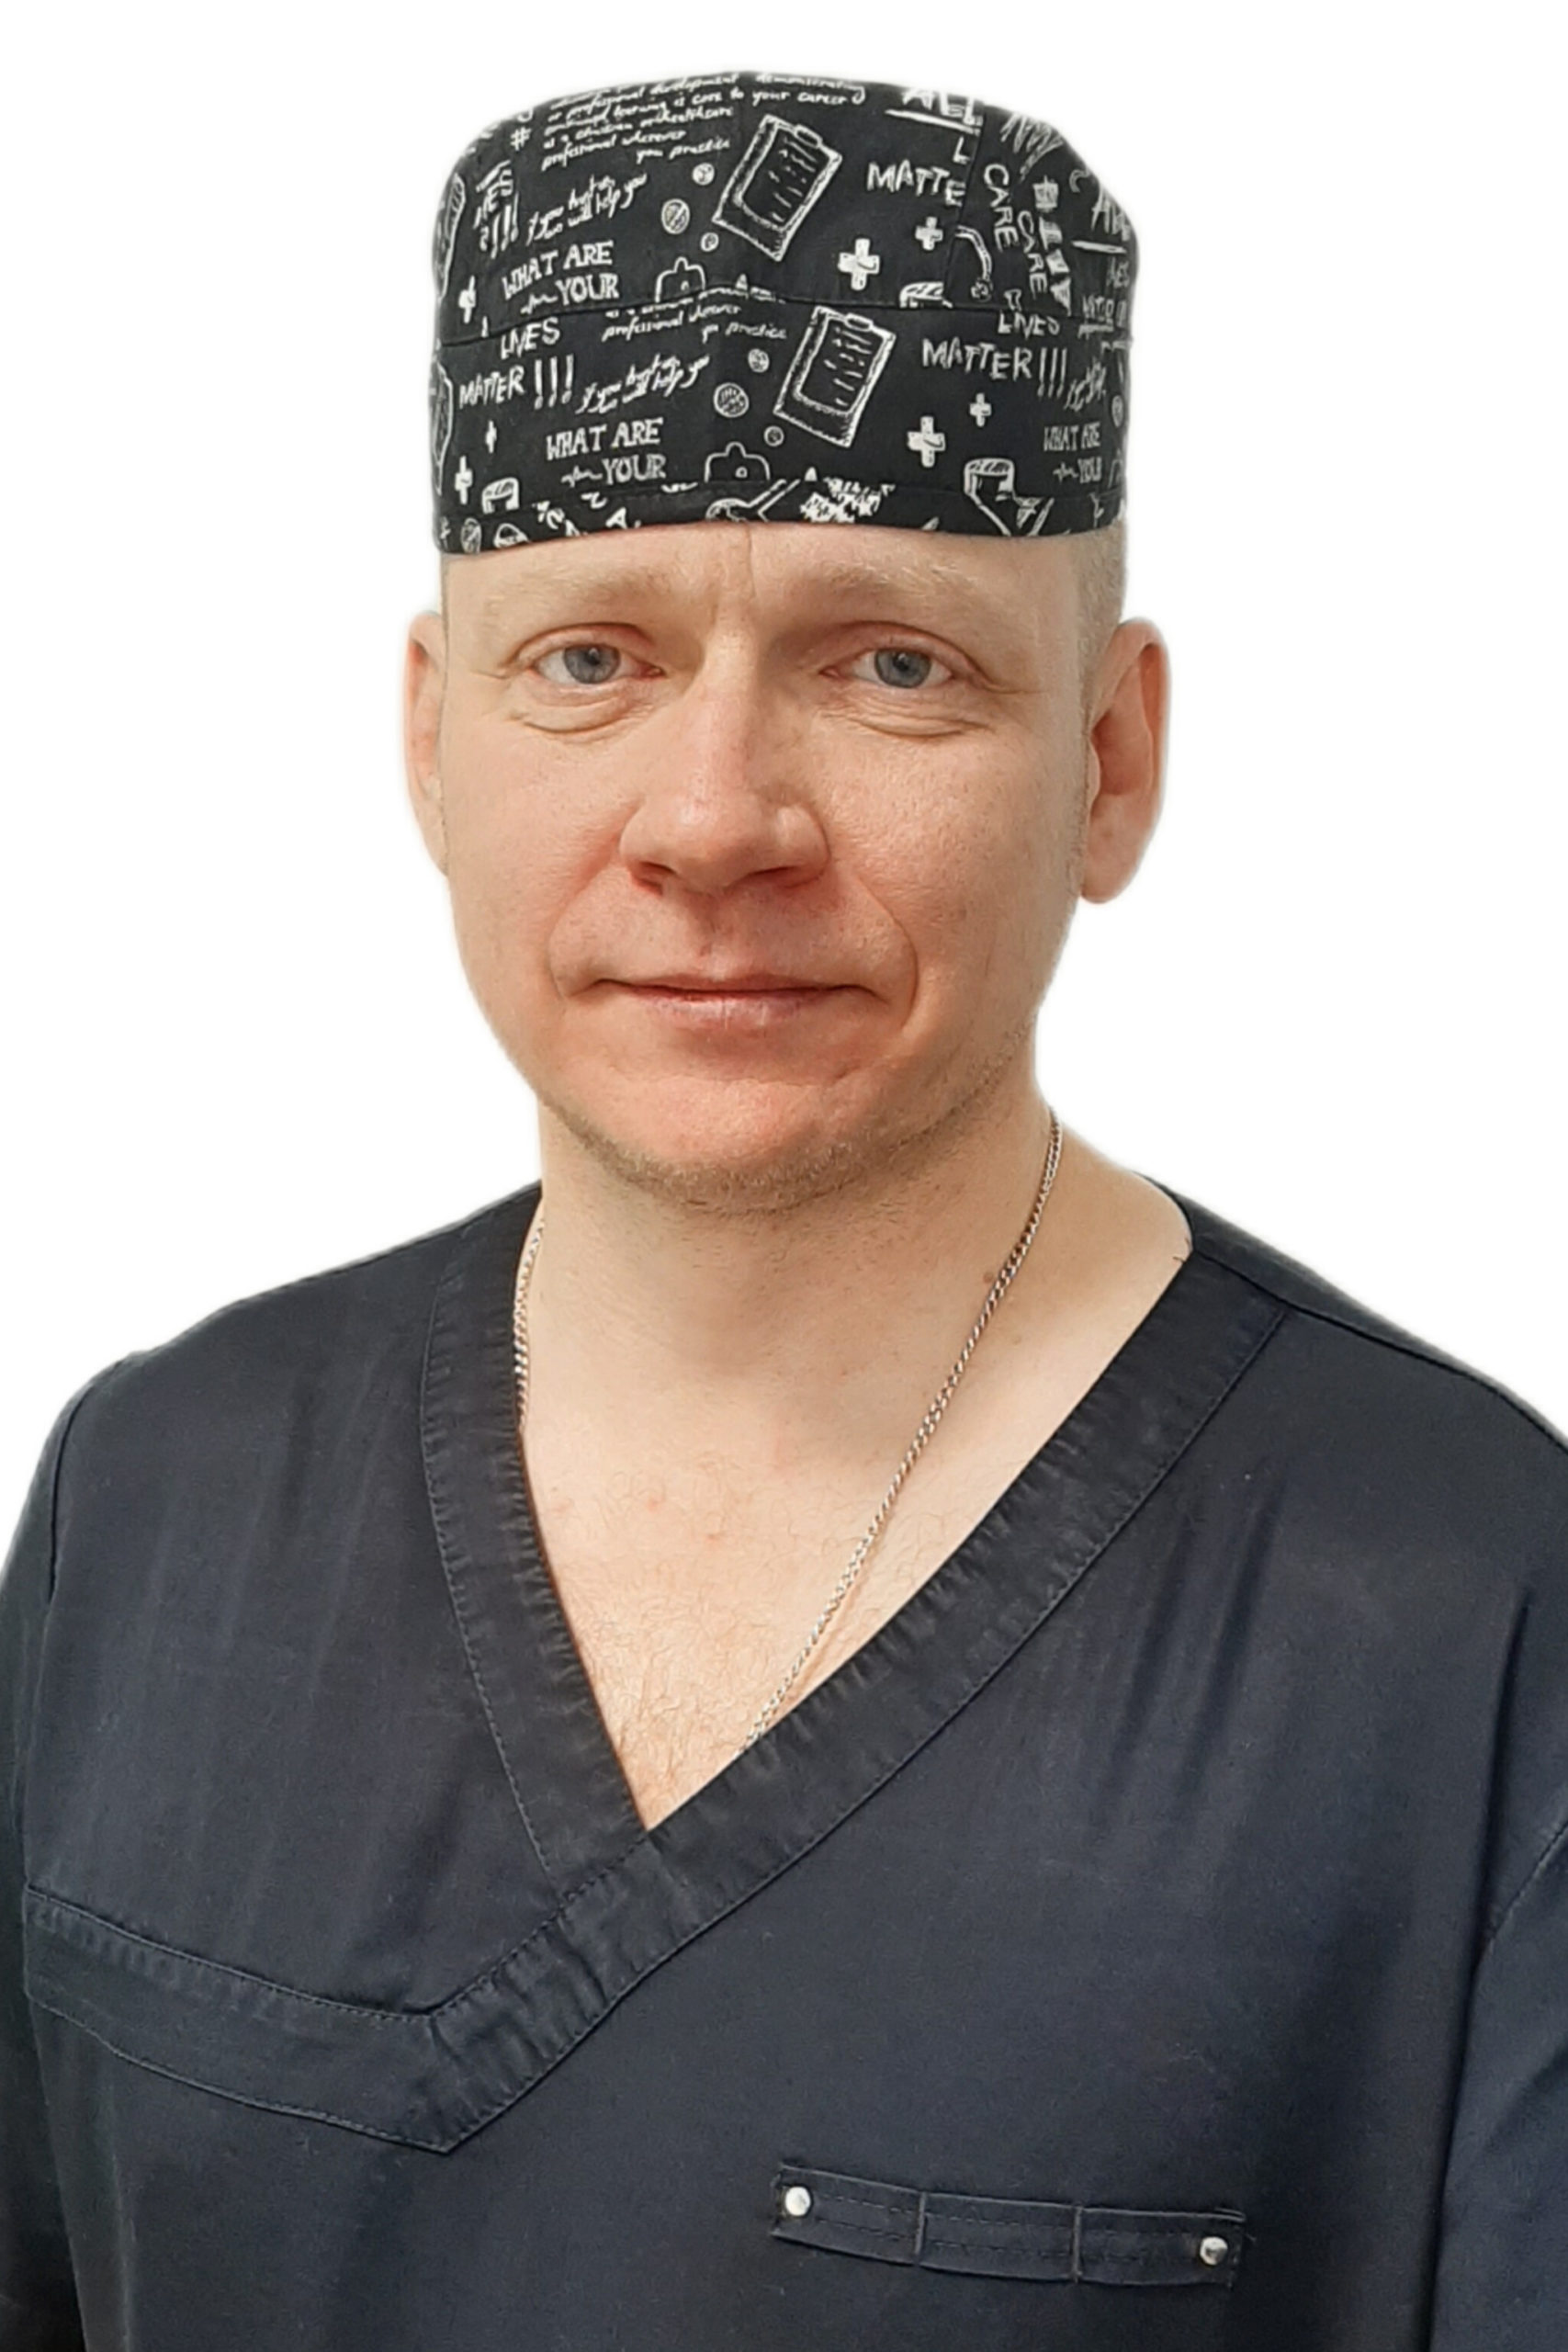 Якимчук Дмитрий Александрович : Врач стоматолог-хирург, имплантолог